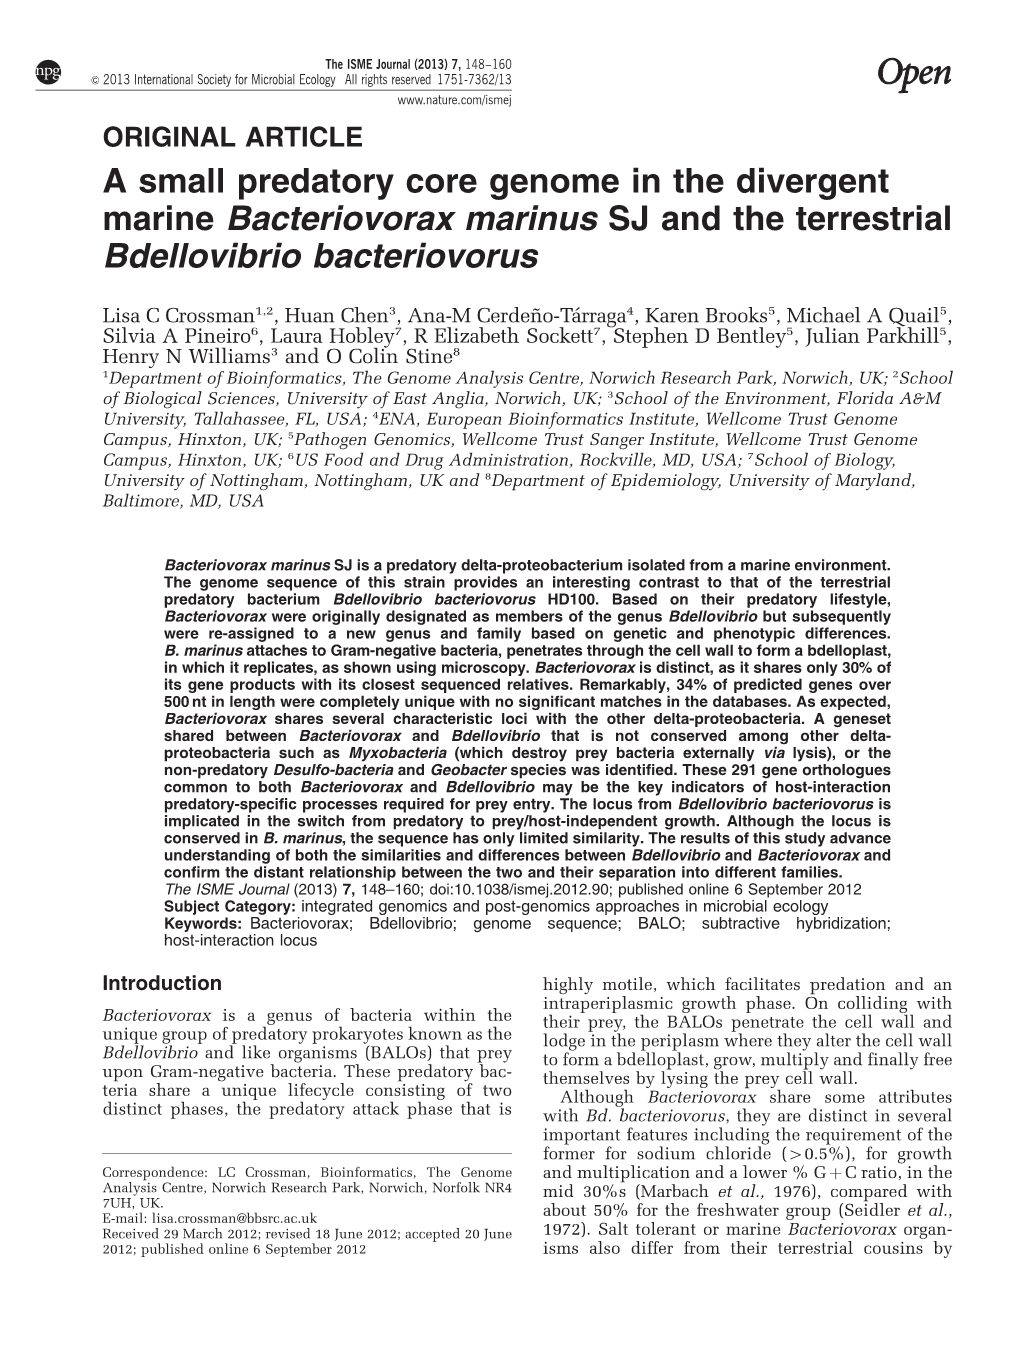 A Small Predatory Core Genome in the Divergent Marine Bacteriovorax Marinus SJ and the Terrestrial Bdellovibrio Bacteriovorus